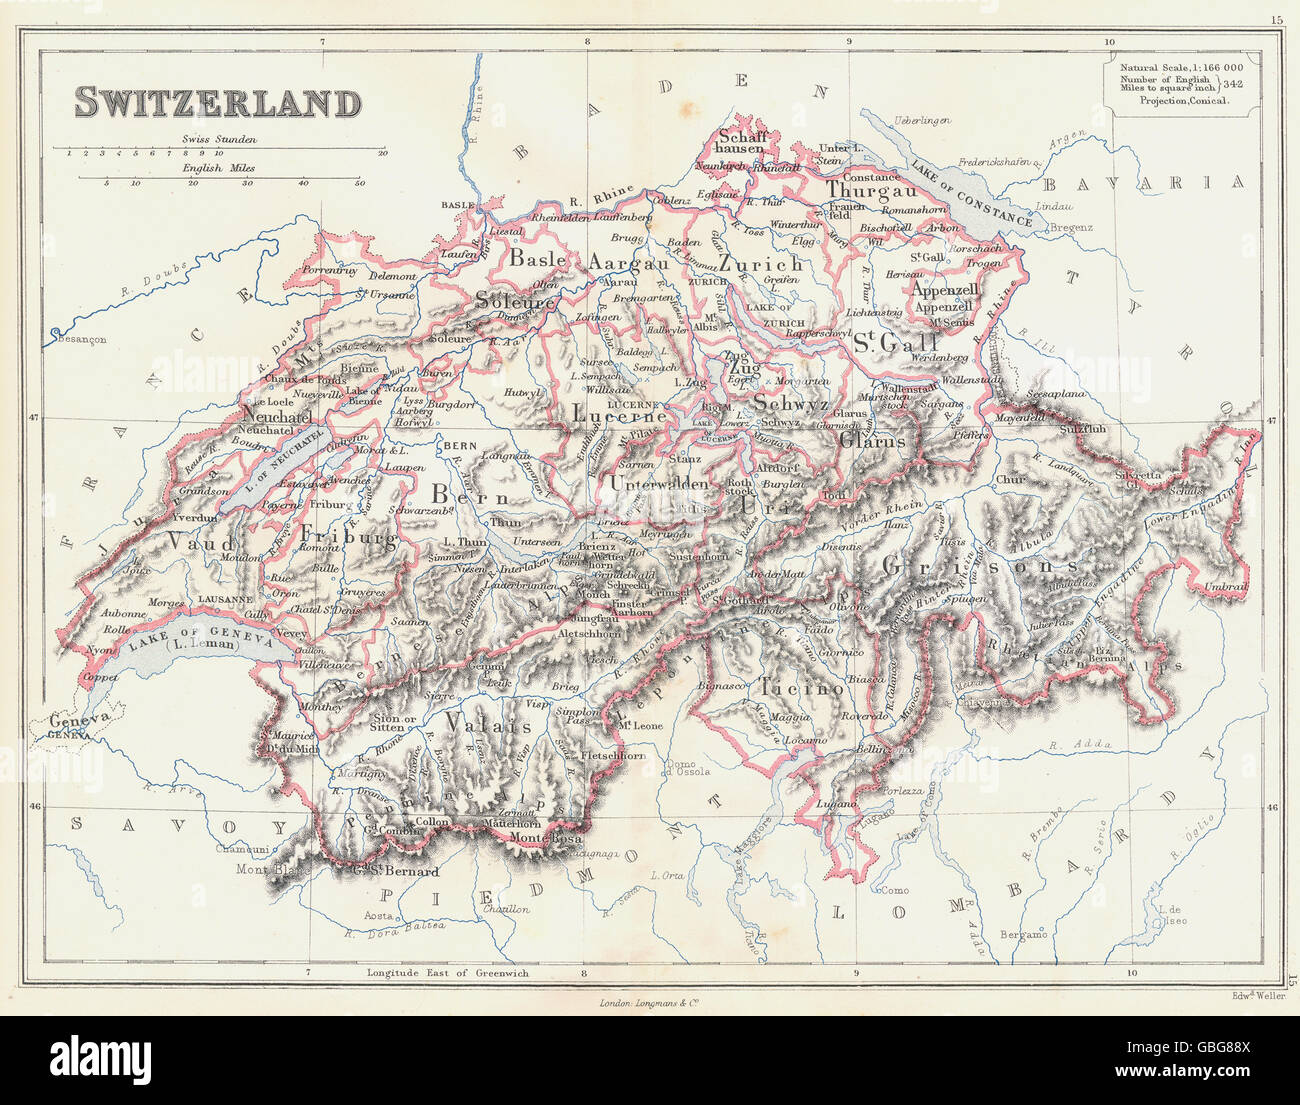 Schweiz: Vorführung Kantonen (Genf zeigt als unabhängig!). BUTLER, 1888 Karte Stockfoto